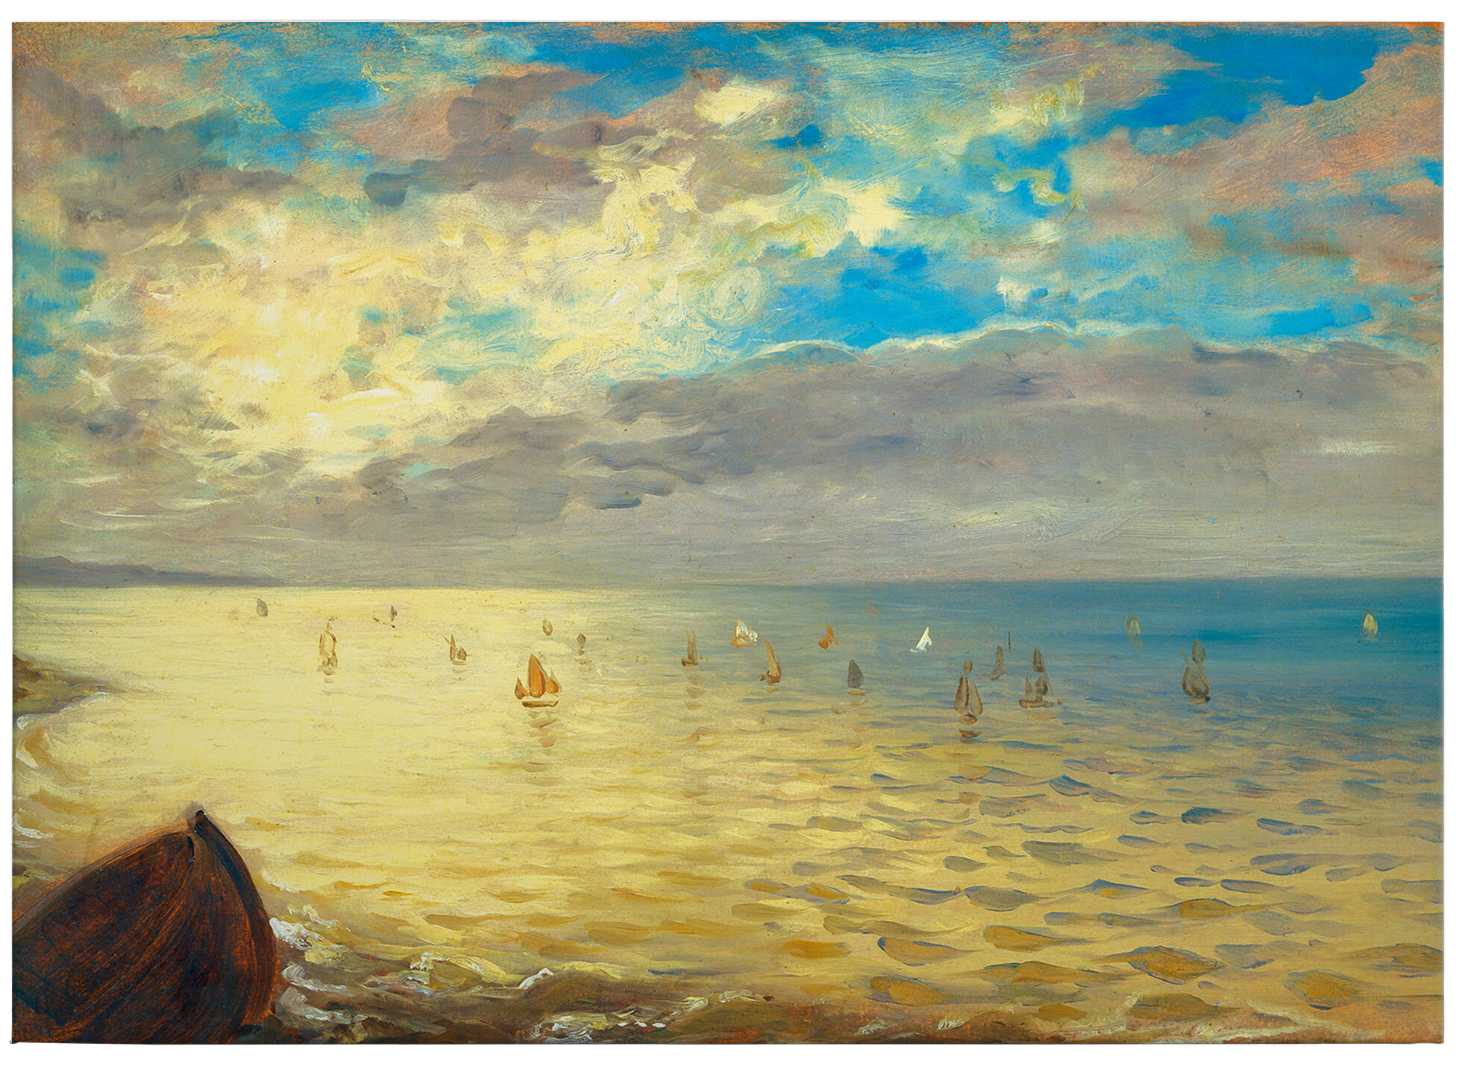             Quadro su tela "Il mare" di Delacroix - 0,70 m x 0,50 m
        